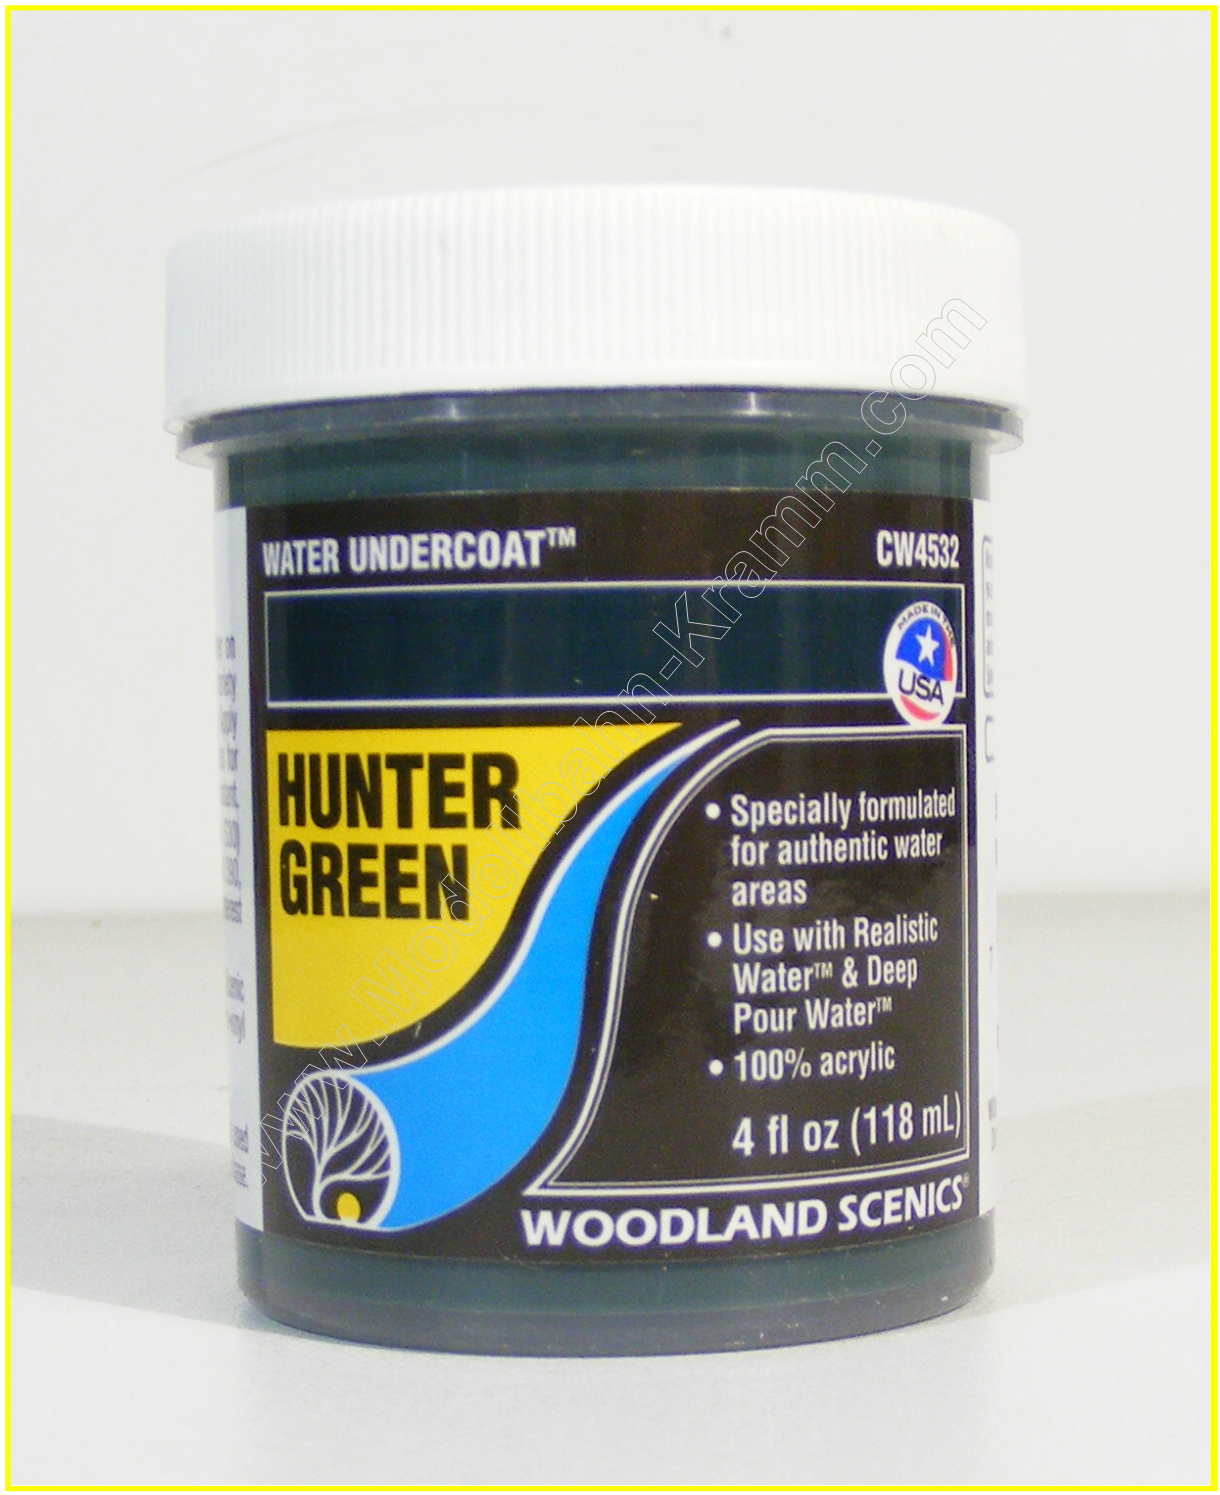 Woodland Scenics WCW4532, EAN 2000008728157: Wassergrundfarbe jägergrün